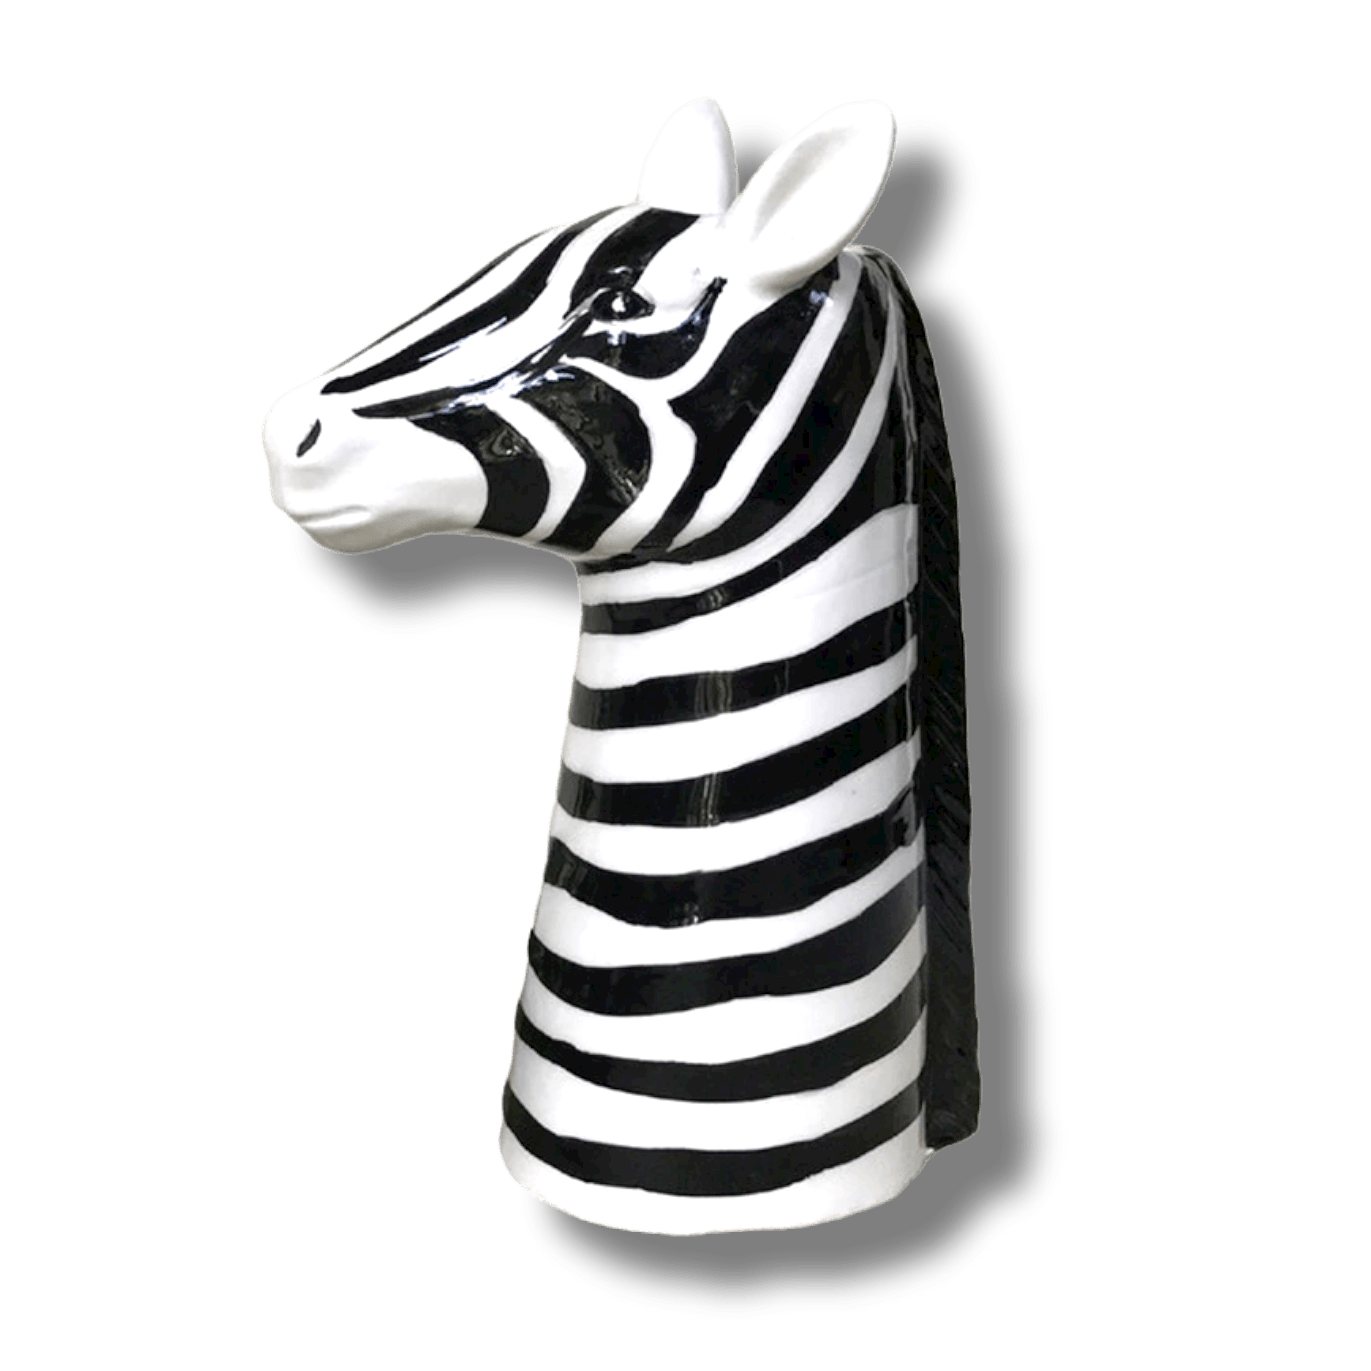 Black and White Zebra Head Ceramic Vase 